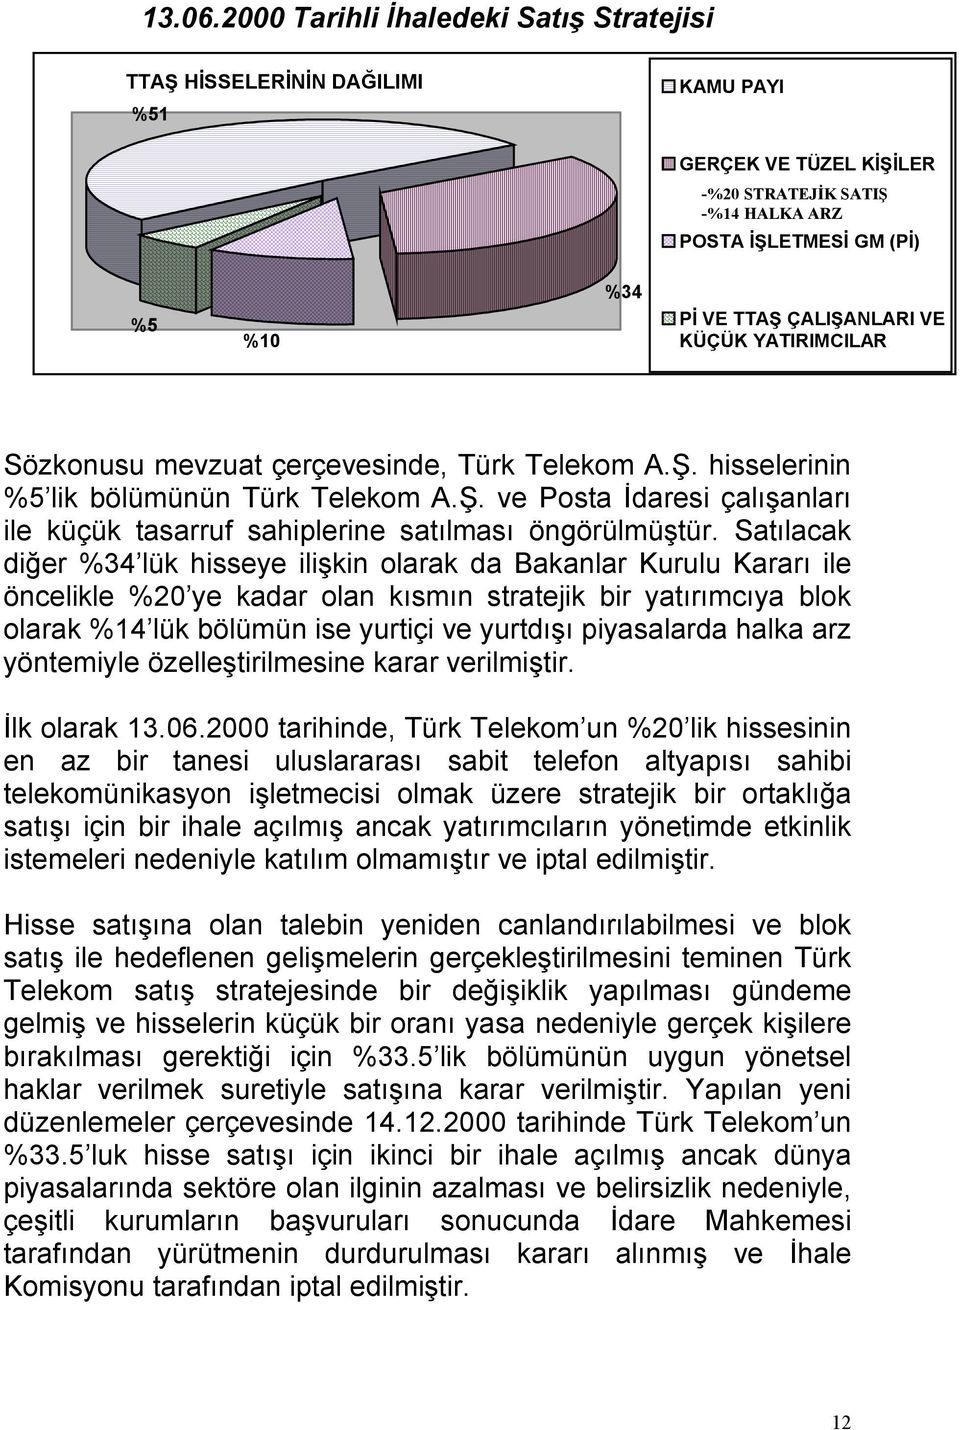 YATIRIMCILAR Sözkonusu mevzuat çerçevesinde, Türk Telekom A.Ş. hisselerinin %5 lik bölümünün Türk Telekom A.Ş. ve Posta İdaresi çalışanları ile küçük tasarruf sahiplerine satılması öngörülmüştür.